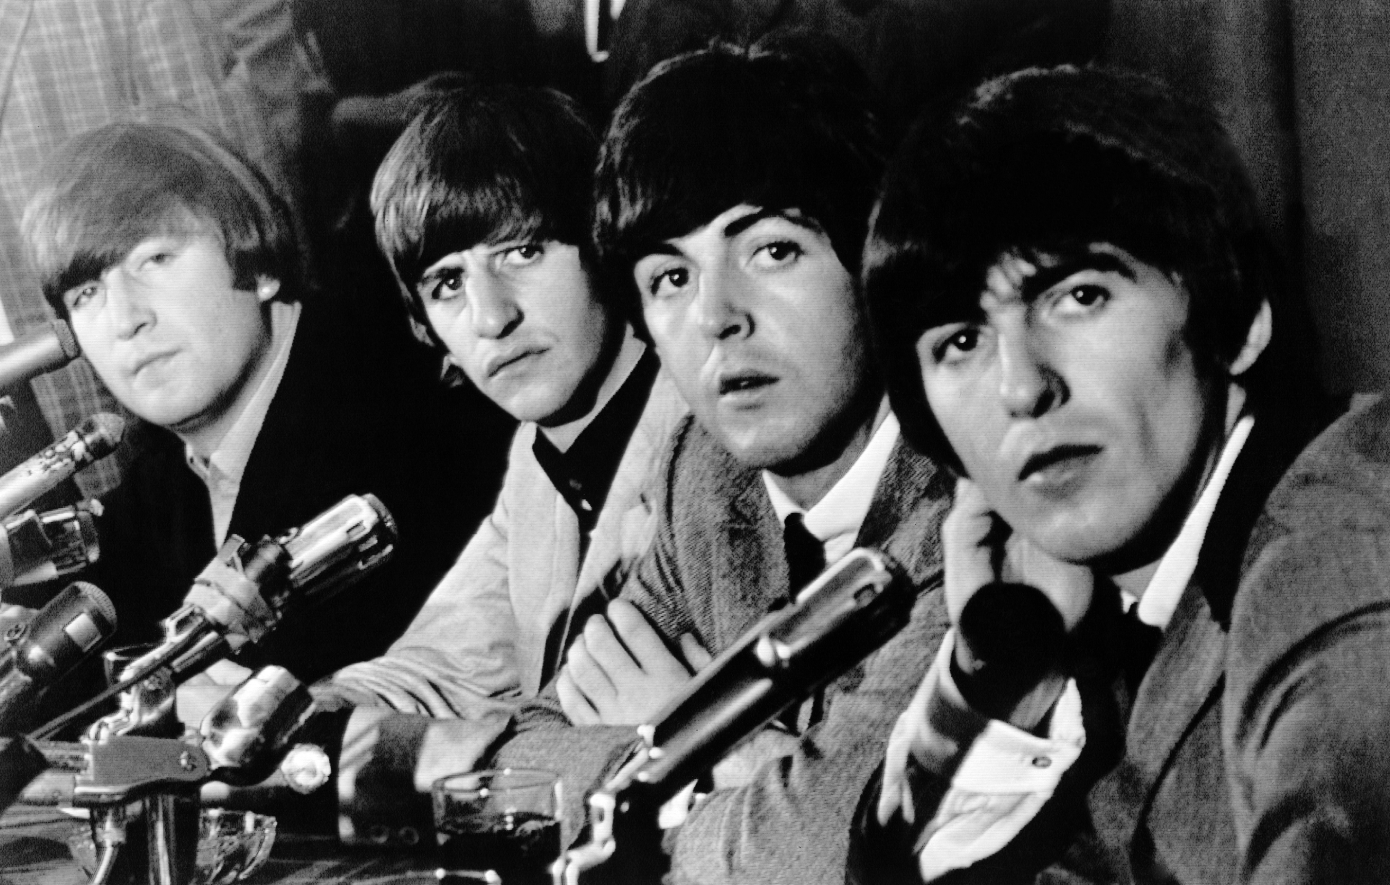 Σαν σήμερα 10 Απριλίου: Οι Beatles τραγουδούν το κύκνειο άσμα τους